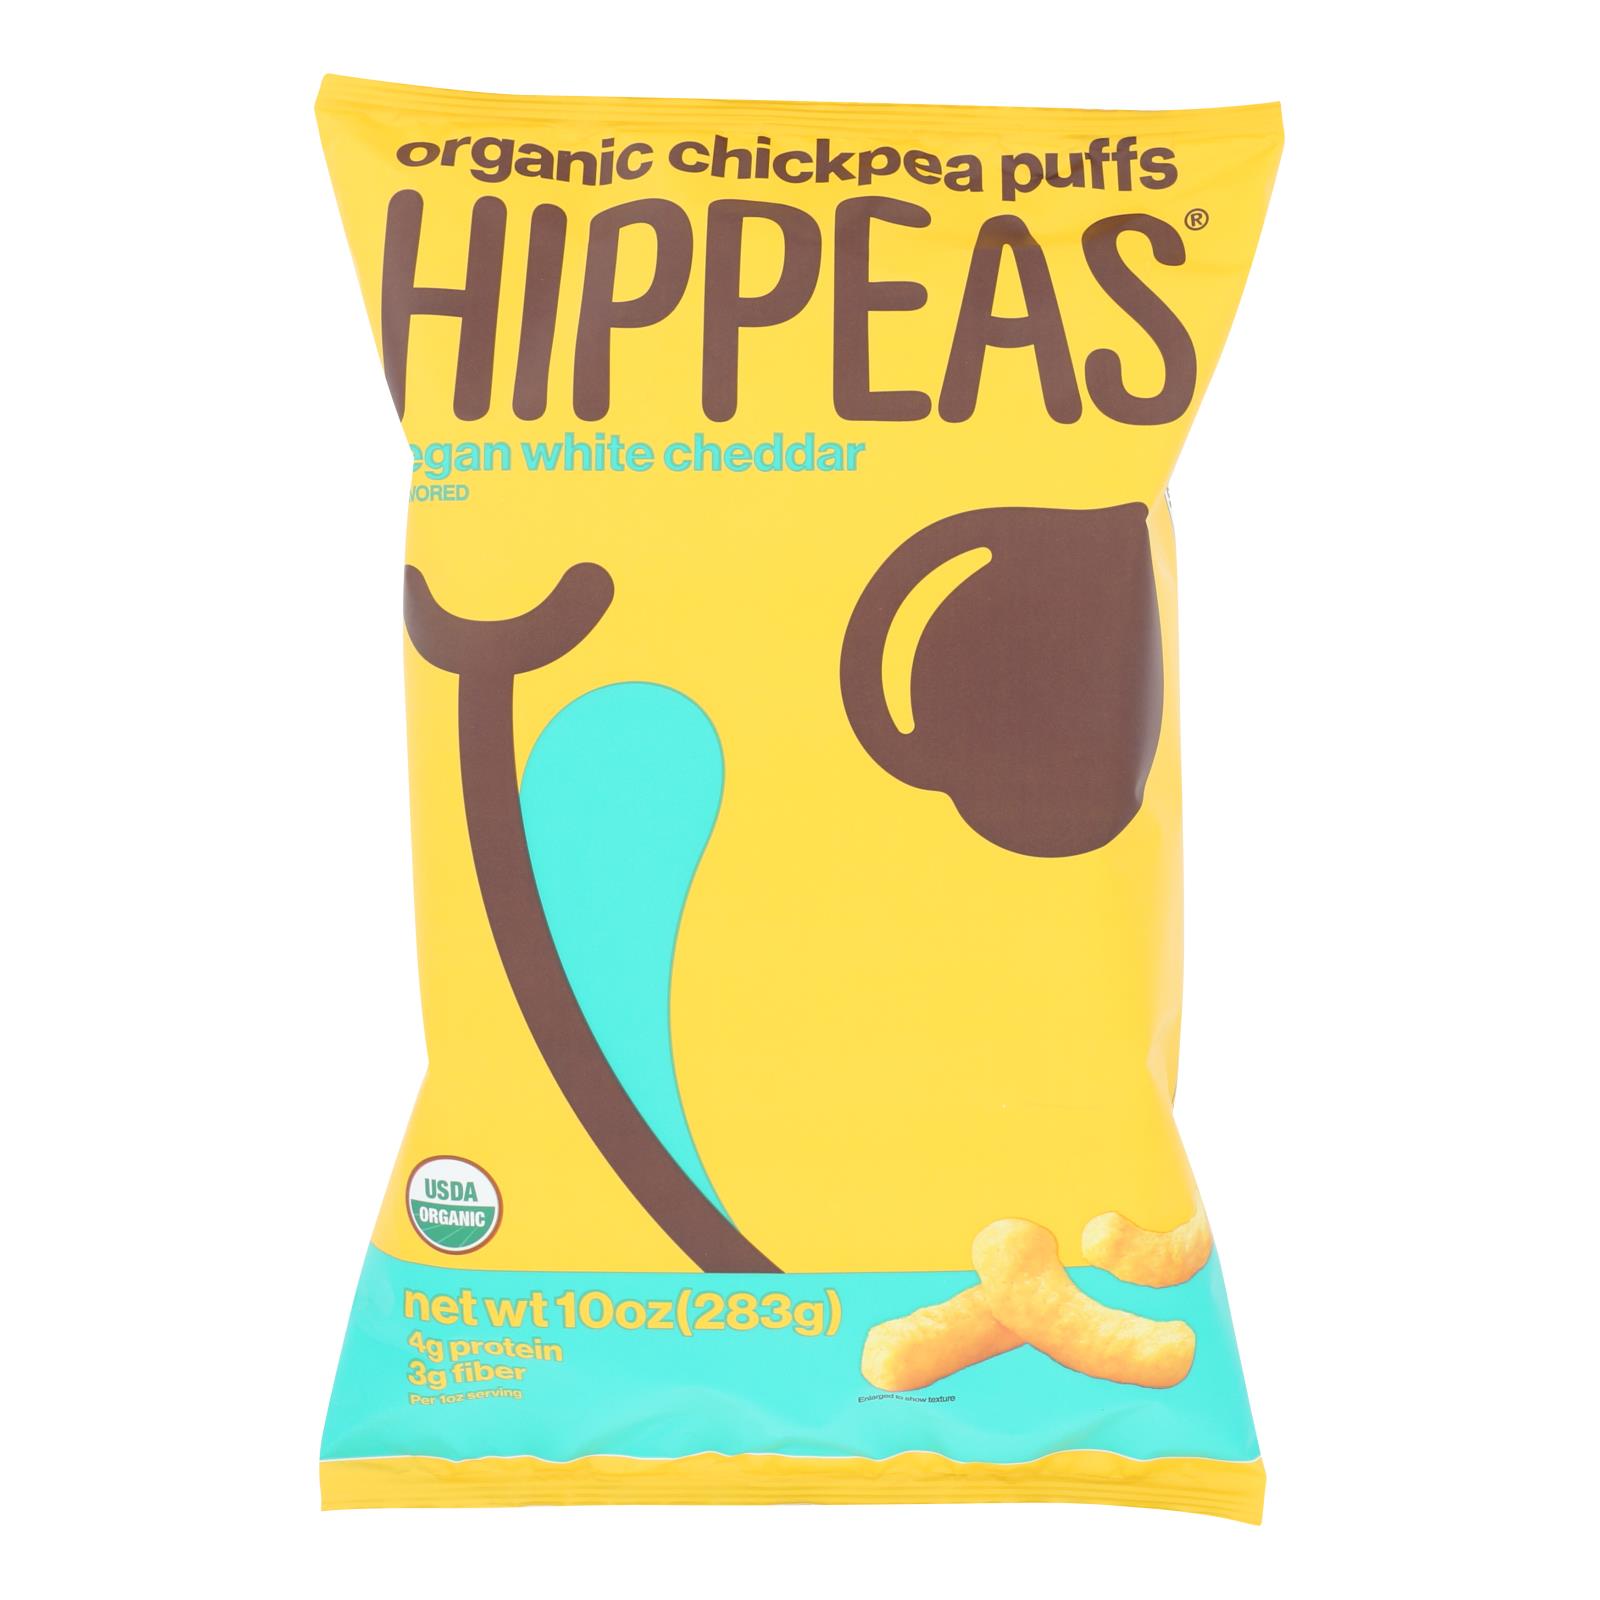 Hippeas - Chckpea Puff Wht Chd - 6개 묶음상품 - 10 OZ